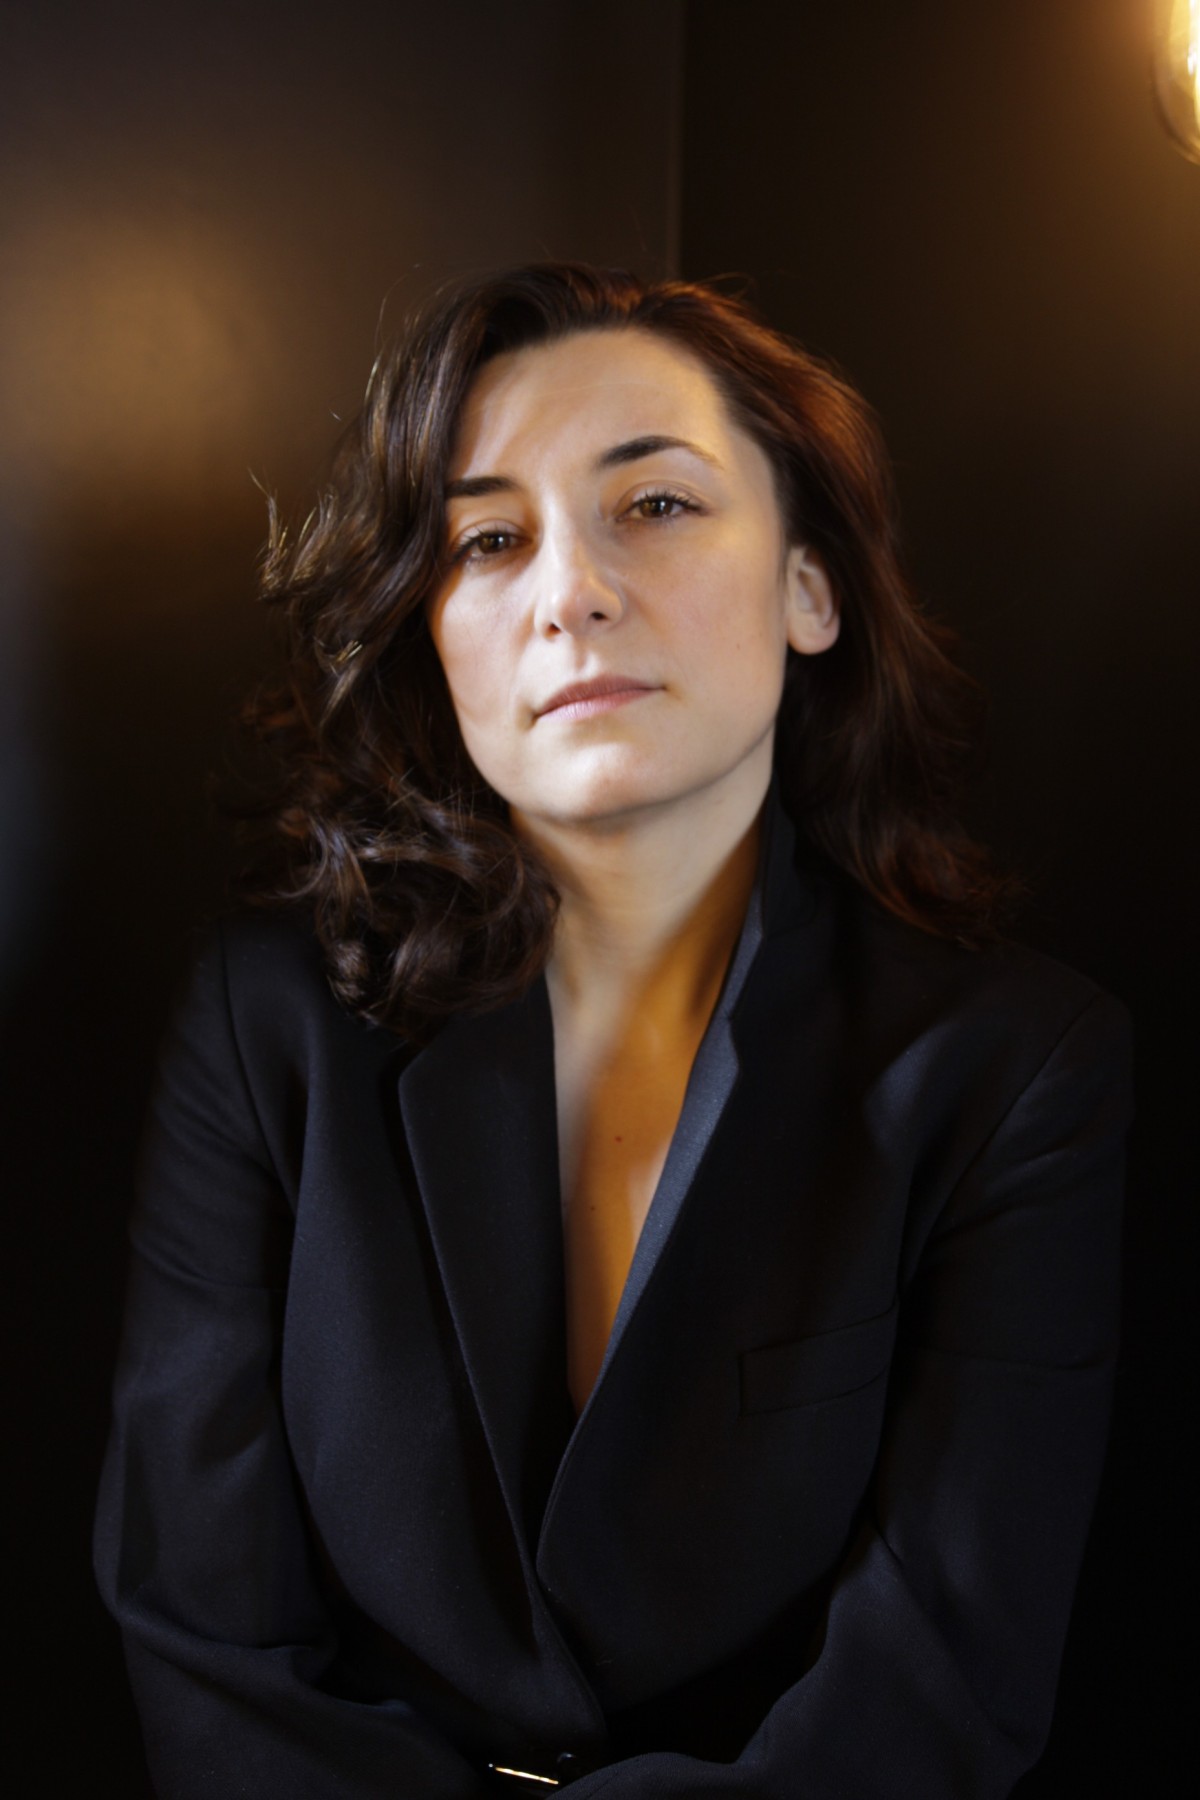 Арх. Адриана Начева: Аз не работя в театър –  аз съм архитект - image 2